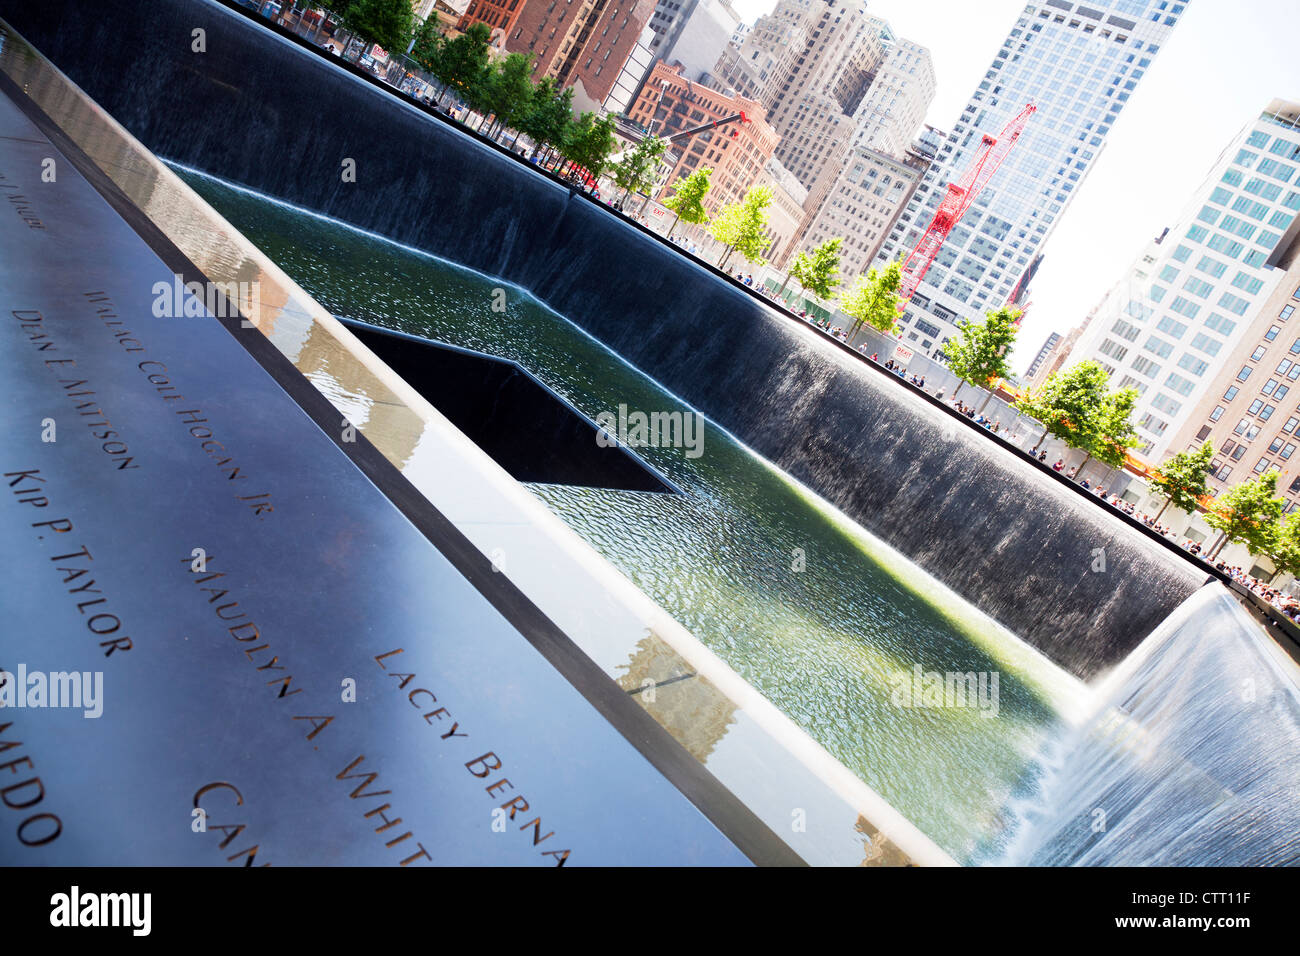 Ground Zero New York Memorial Wasserfall mit Namen eingeschrieben Runde, die der äußere Rand, wo trauernde versammeln, um Zahlen, zu 9/11 respektiert Stockfoto